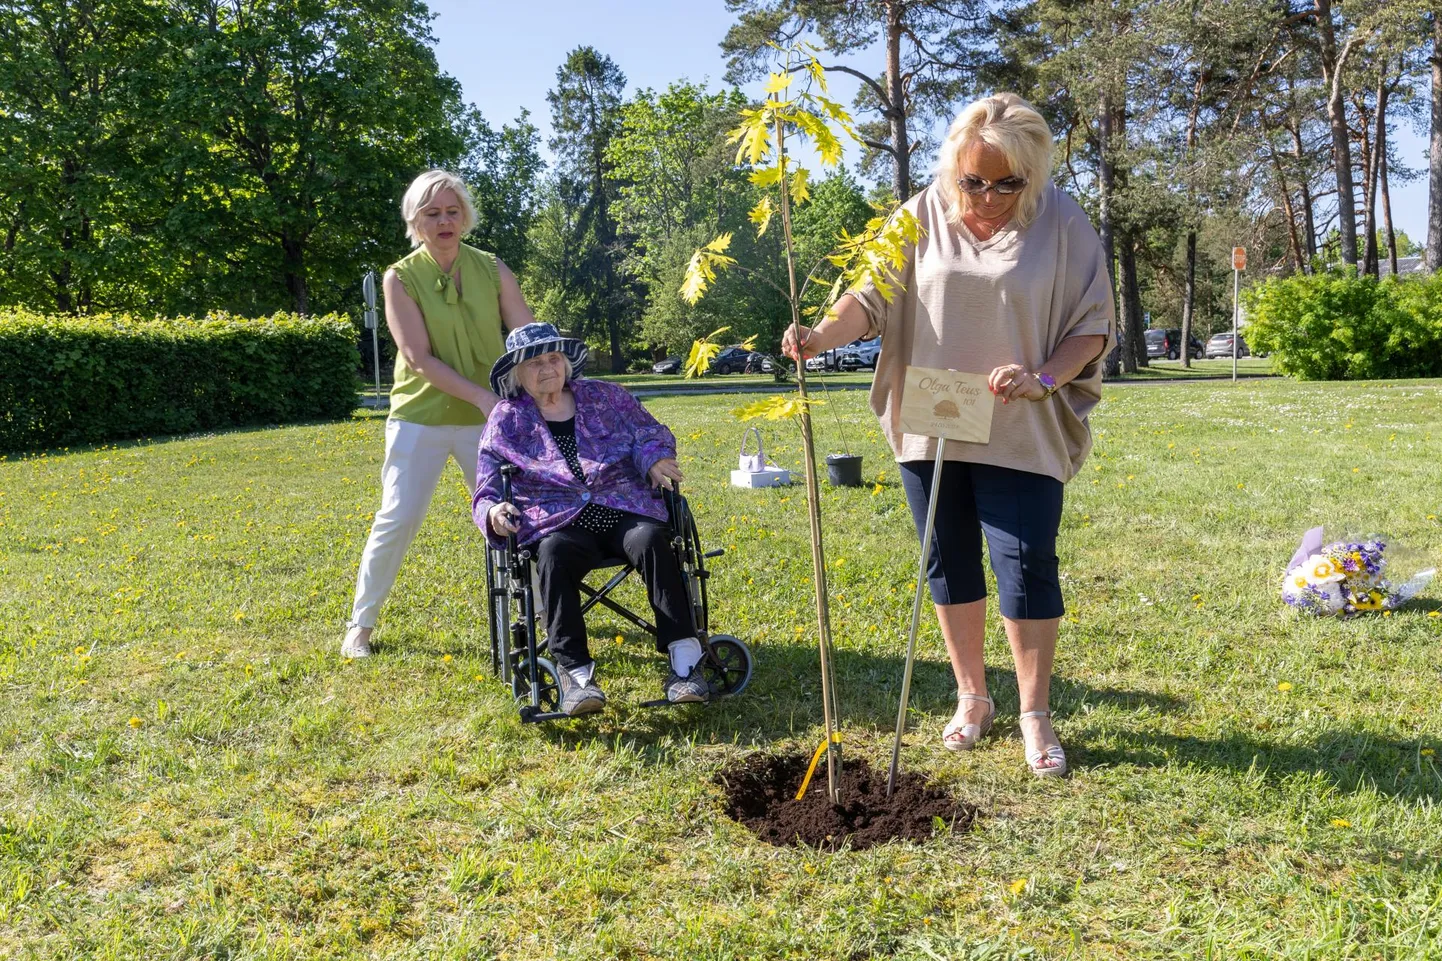 Мэр Раквере Трийн Варек сажает красный дуб в саду дома престарелых Имасту в честь Ольги Теус. Сигрит Кулланг, управляющая домом по уходу, стоит позади именинницы, сидящей в инвалидной коляске.